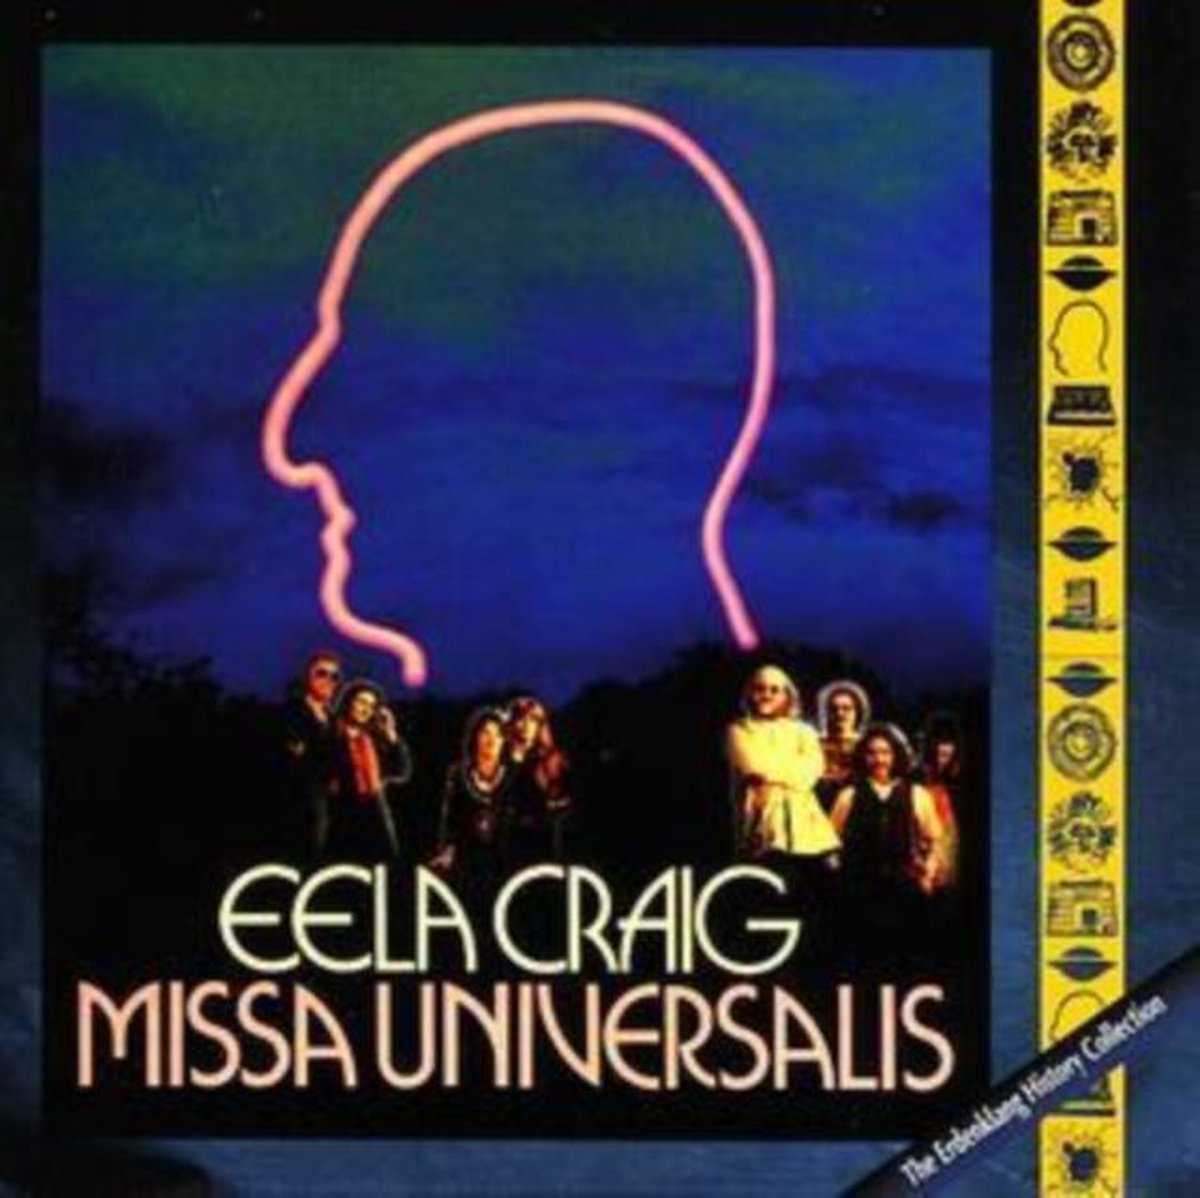 Missa Universalis - Eela Craig